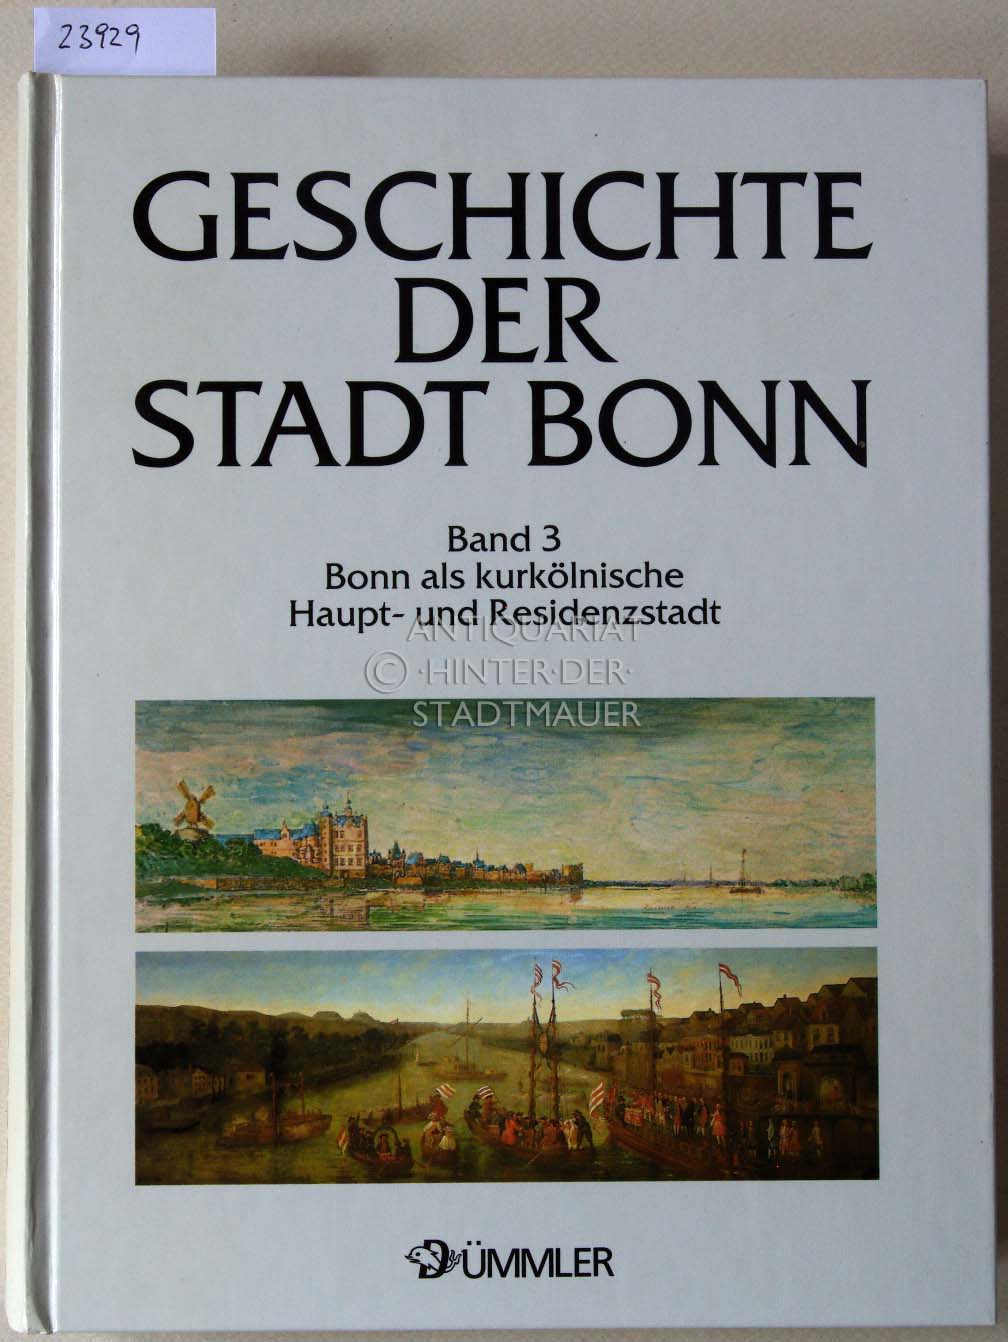 Bonn. Bonn als kurkölnische Haupt- und Residenzstadt, 1597-1794. [= Geschiche der Stadt Bonn, Band 3] - Höroldt, Dietrich (Hrsg.)